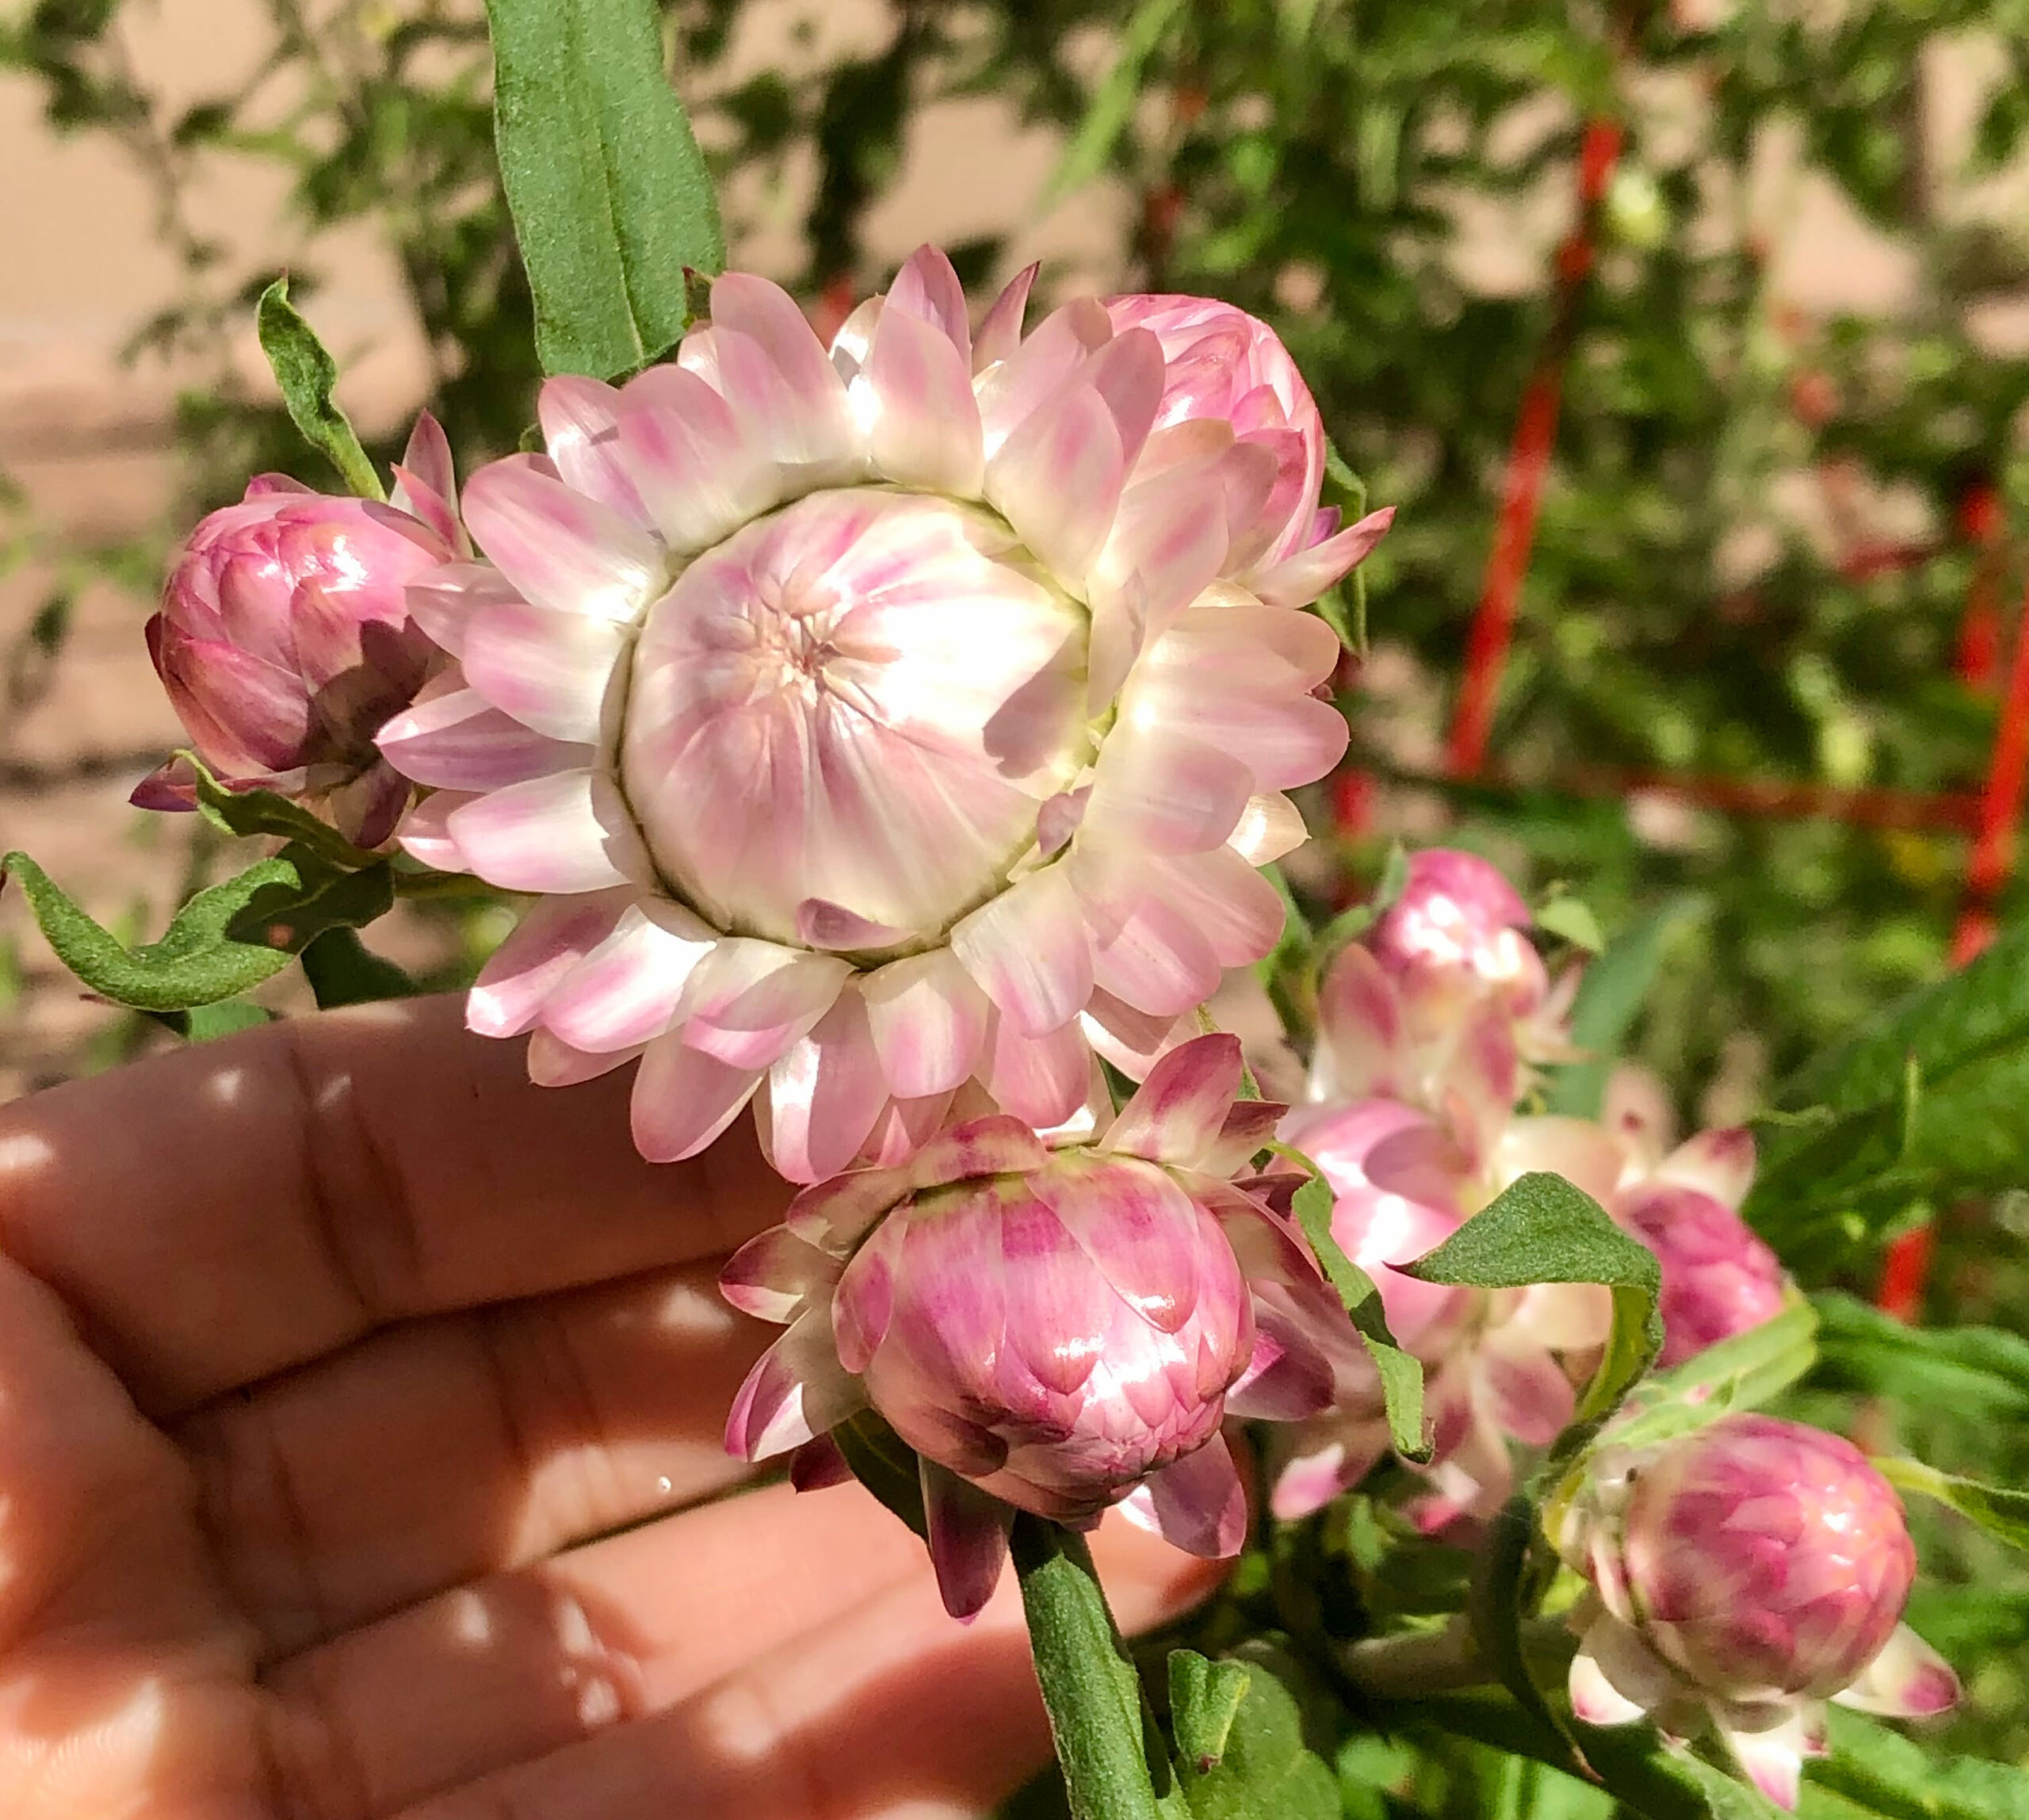 Strawflowers (Helichrysum) - Dark Pink - Dried Flowers - DIY